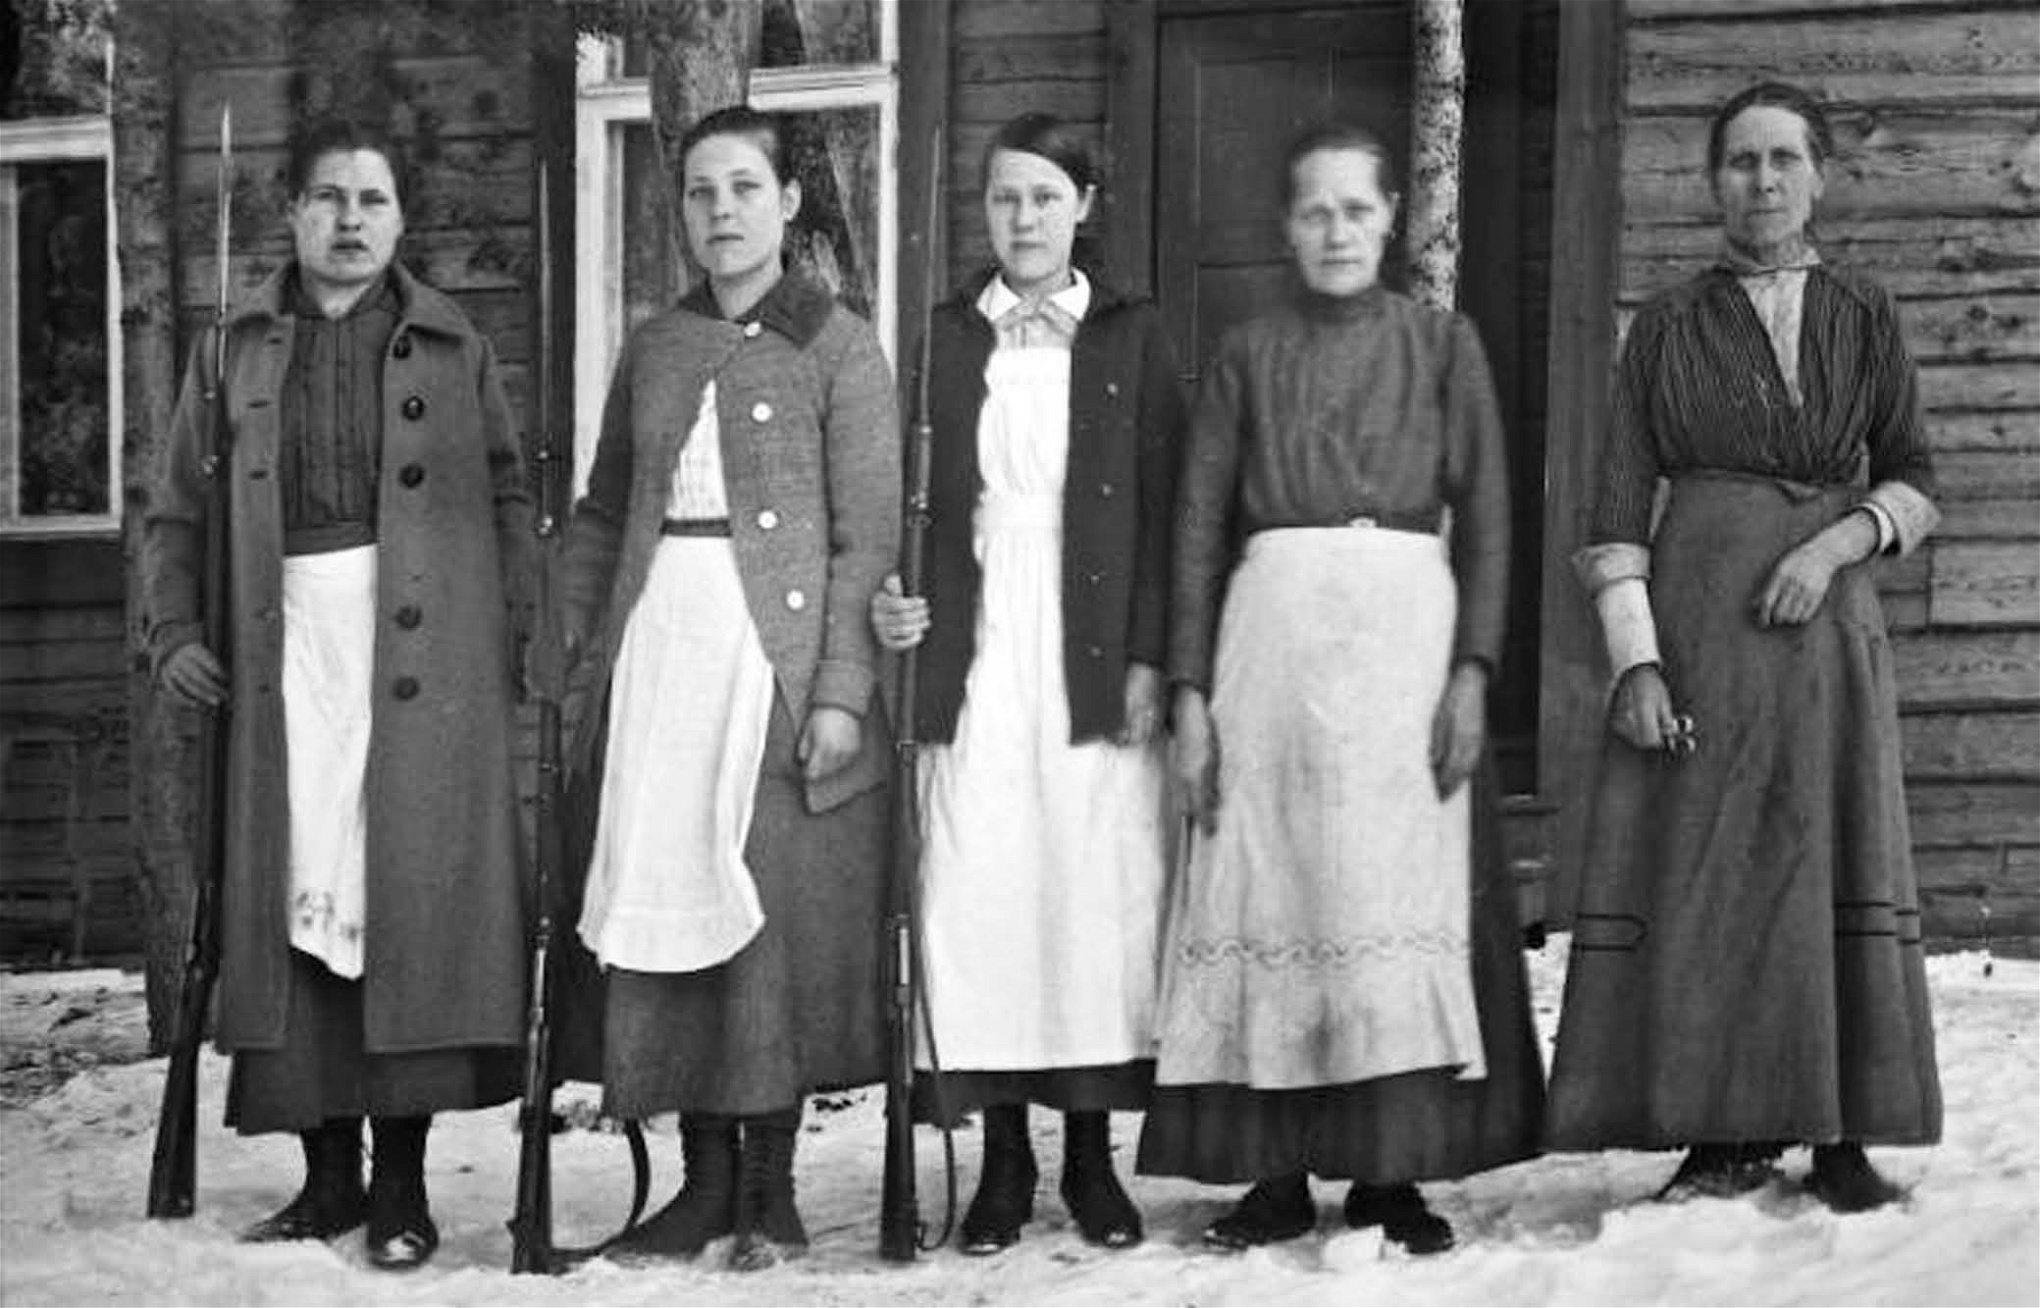 Kvinnor ur ett av de lokala röda gardena vid tiden för inbördeskrigets
utbrott. De tillfångatagna kvinnliga rödgardisterna uppges av många källor ha varit särskilt hatade av den segrande vita sidan vid krigsslutet.